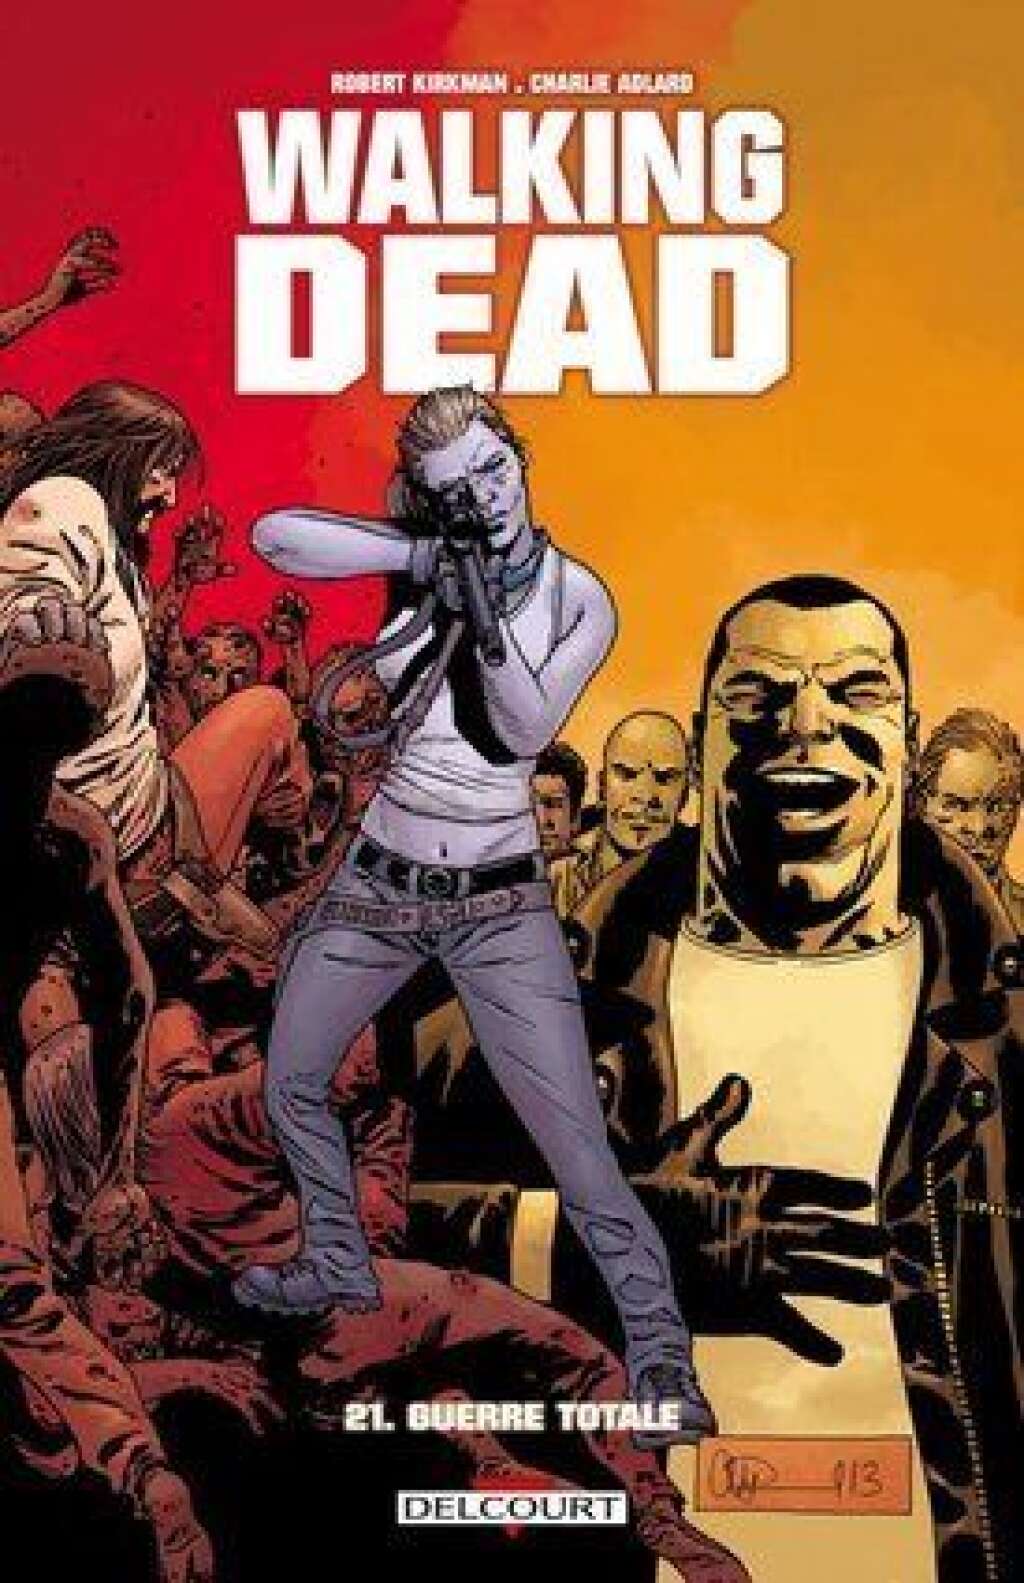 Walking Dead T. 21 / 110 000 exemplaires -  Charlie Adlard, Robert Kirkman Delcourt comics